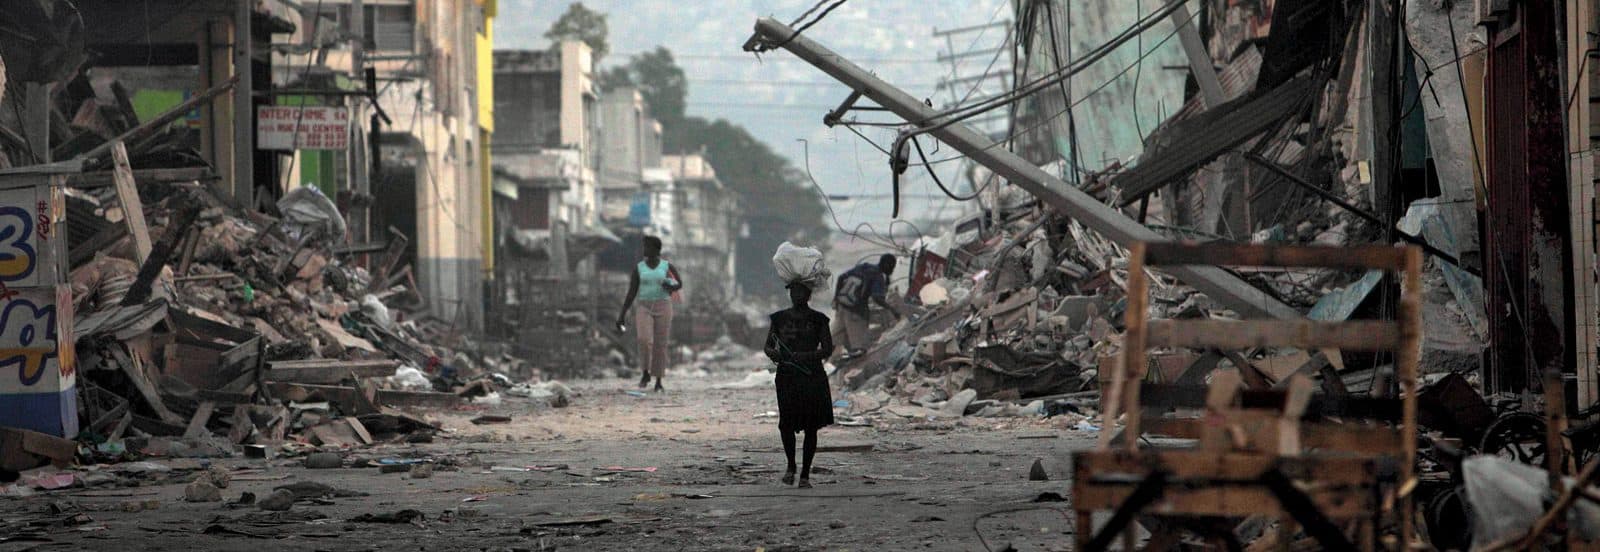 haiti earth quake 2010